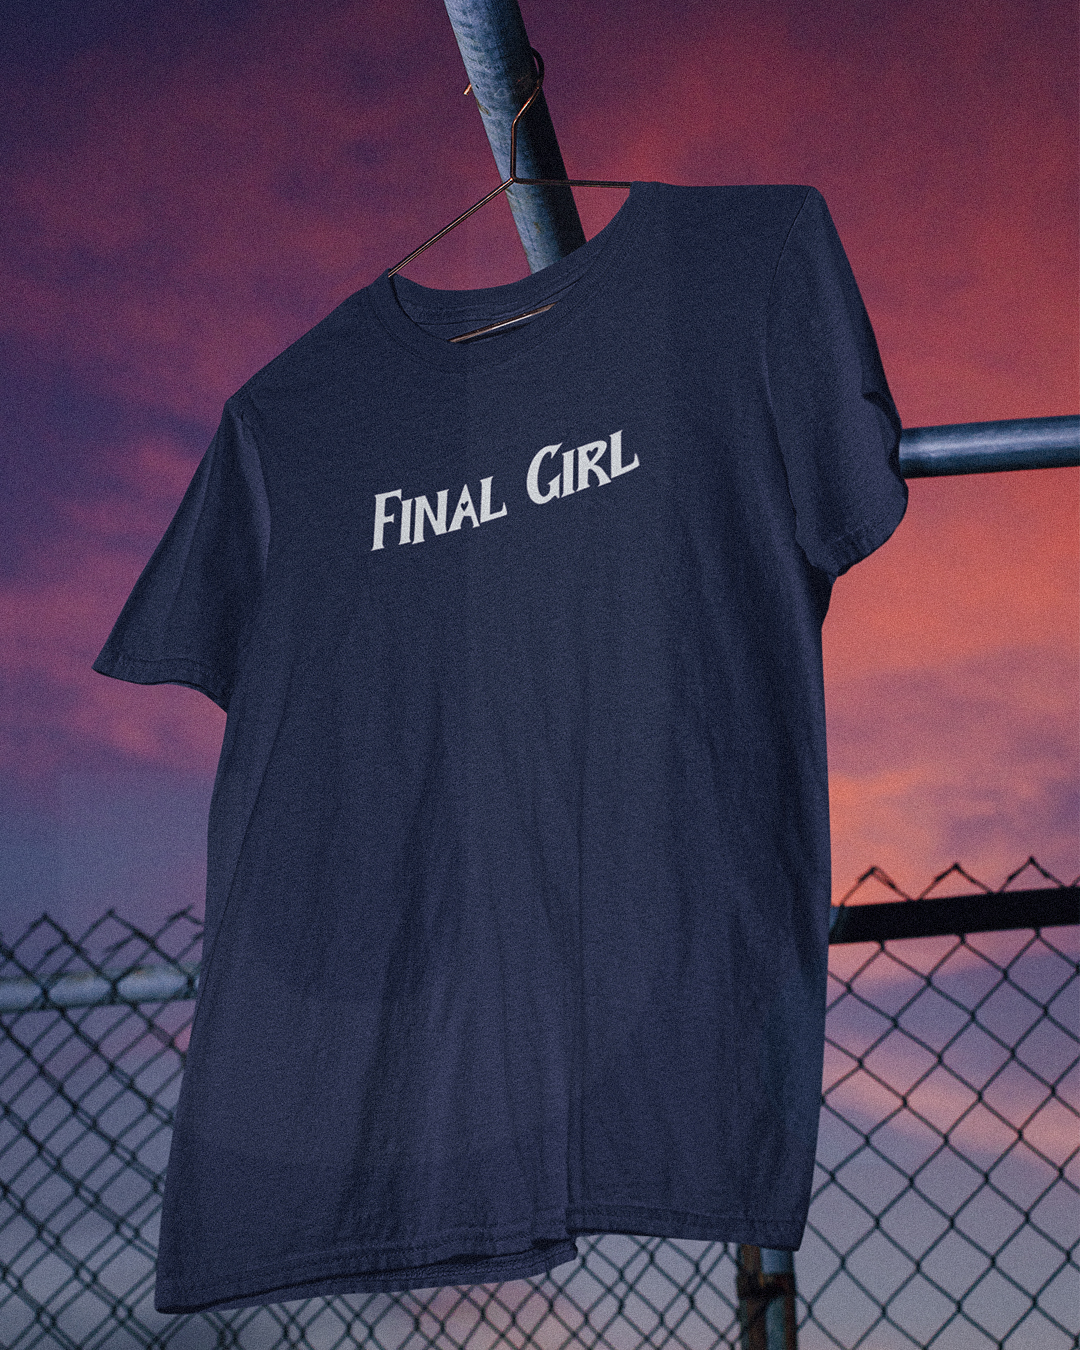 Final Girl T-Shirt - Halloween Horror Film Scream Inspired Final Girls T-Shirt - Final Girl Halloween T-Shirt